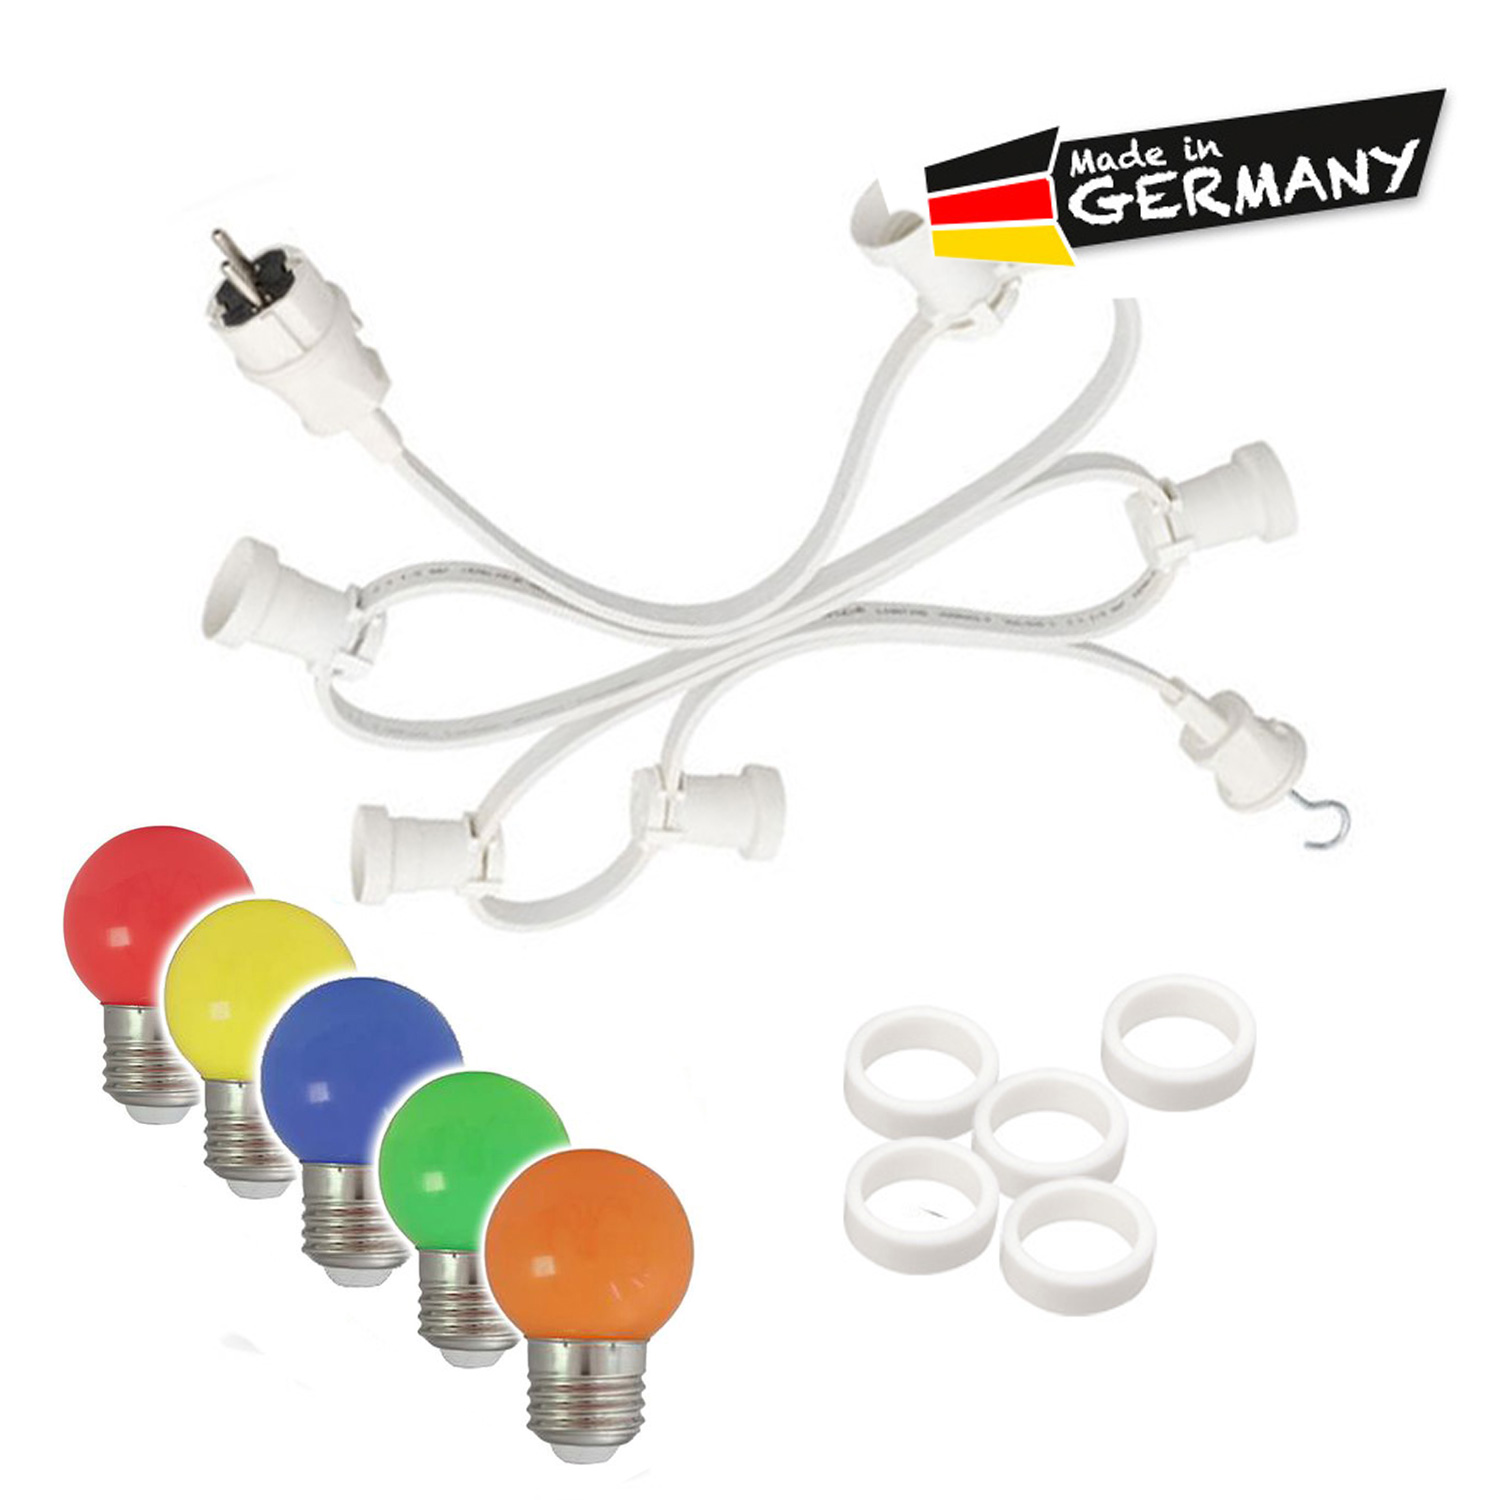 Illu-/Partylichterkette 20m - Außenlichterkette weiß - Made in Germany - 20 x bunte LED Kugellampen